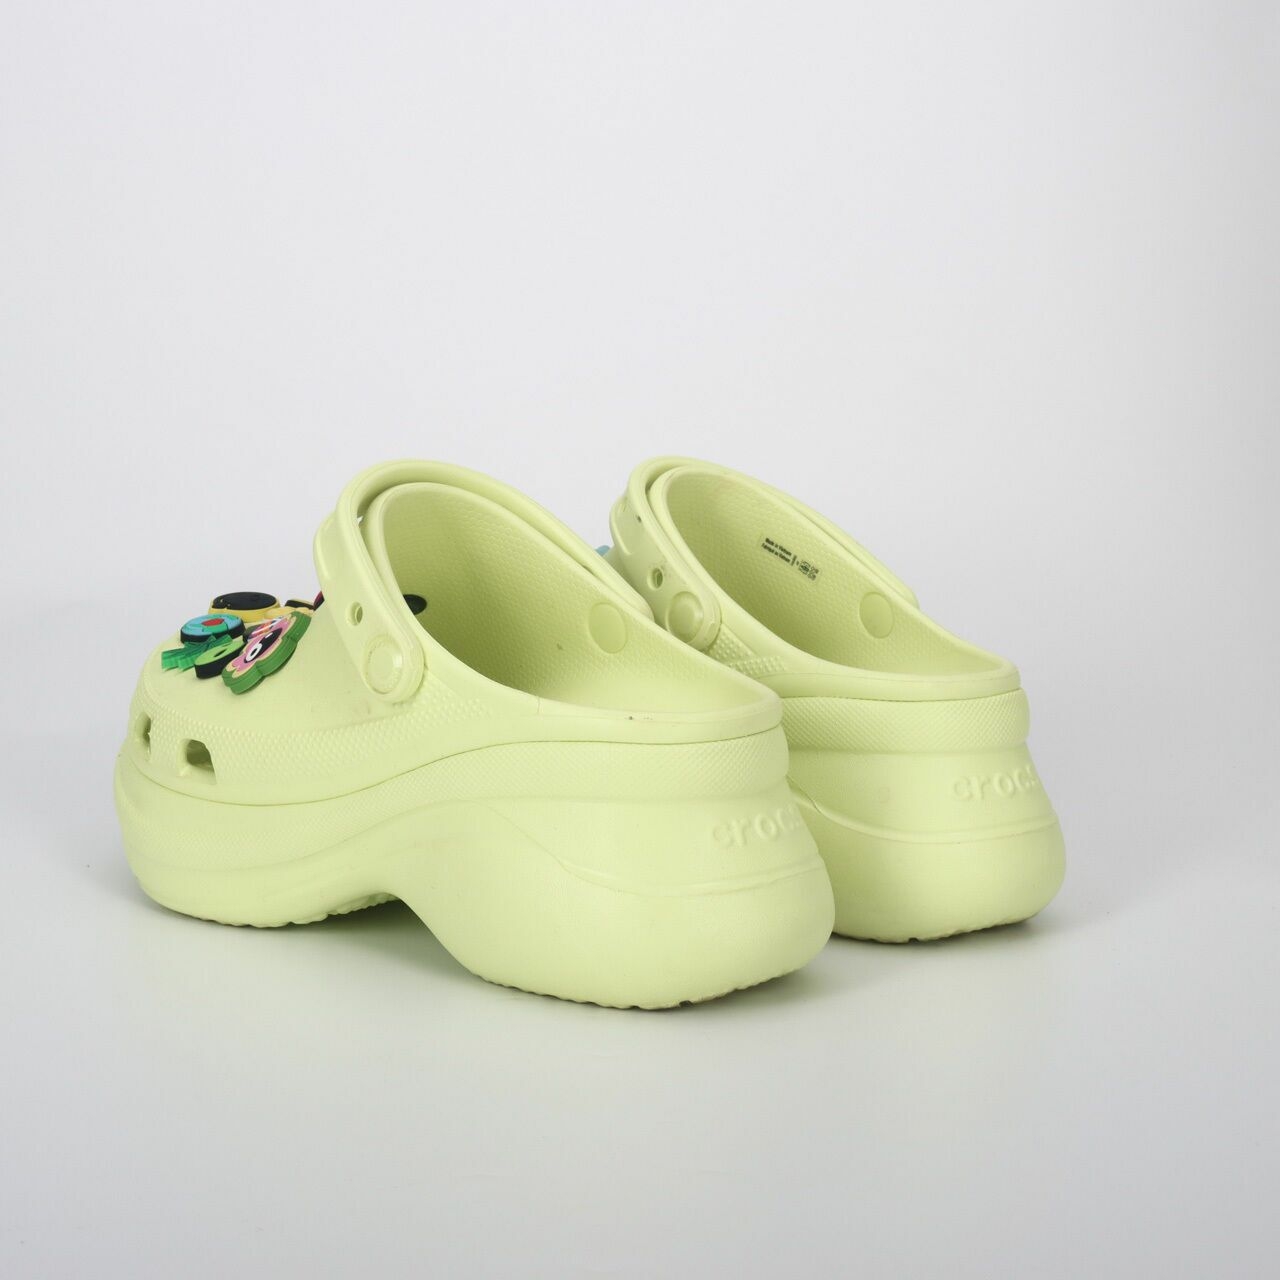 Crocs Green Sandals